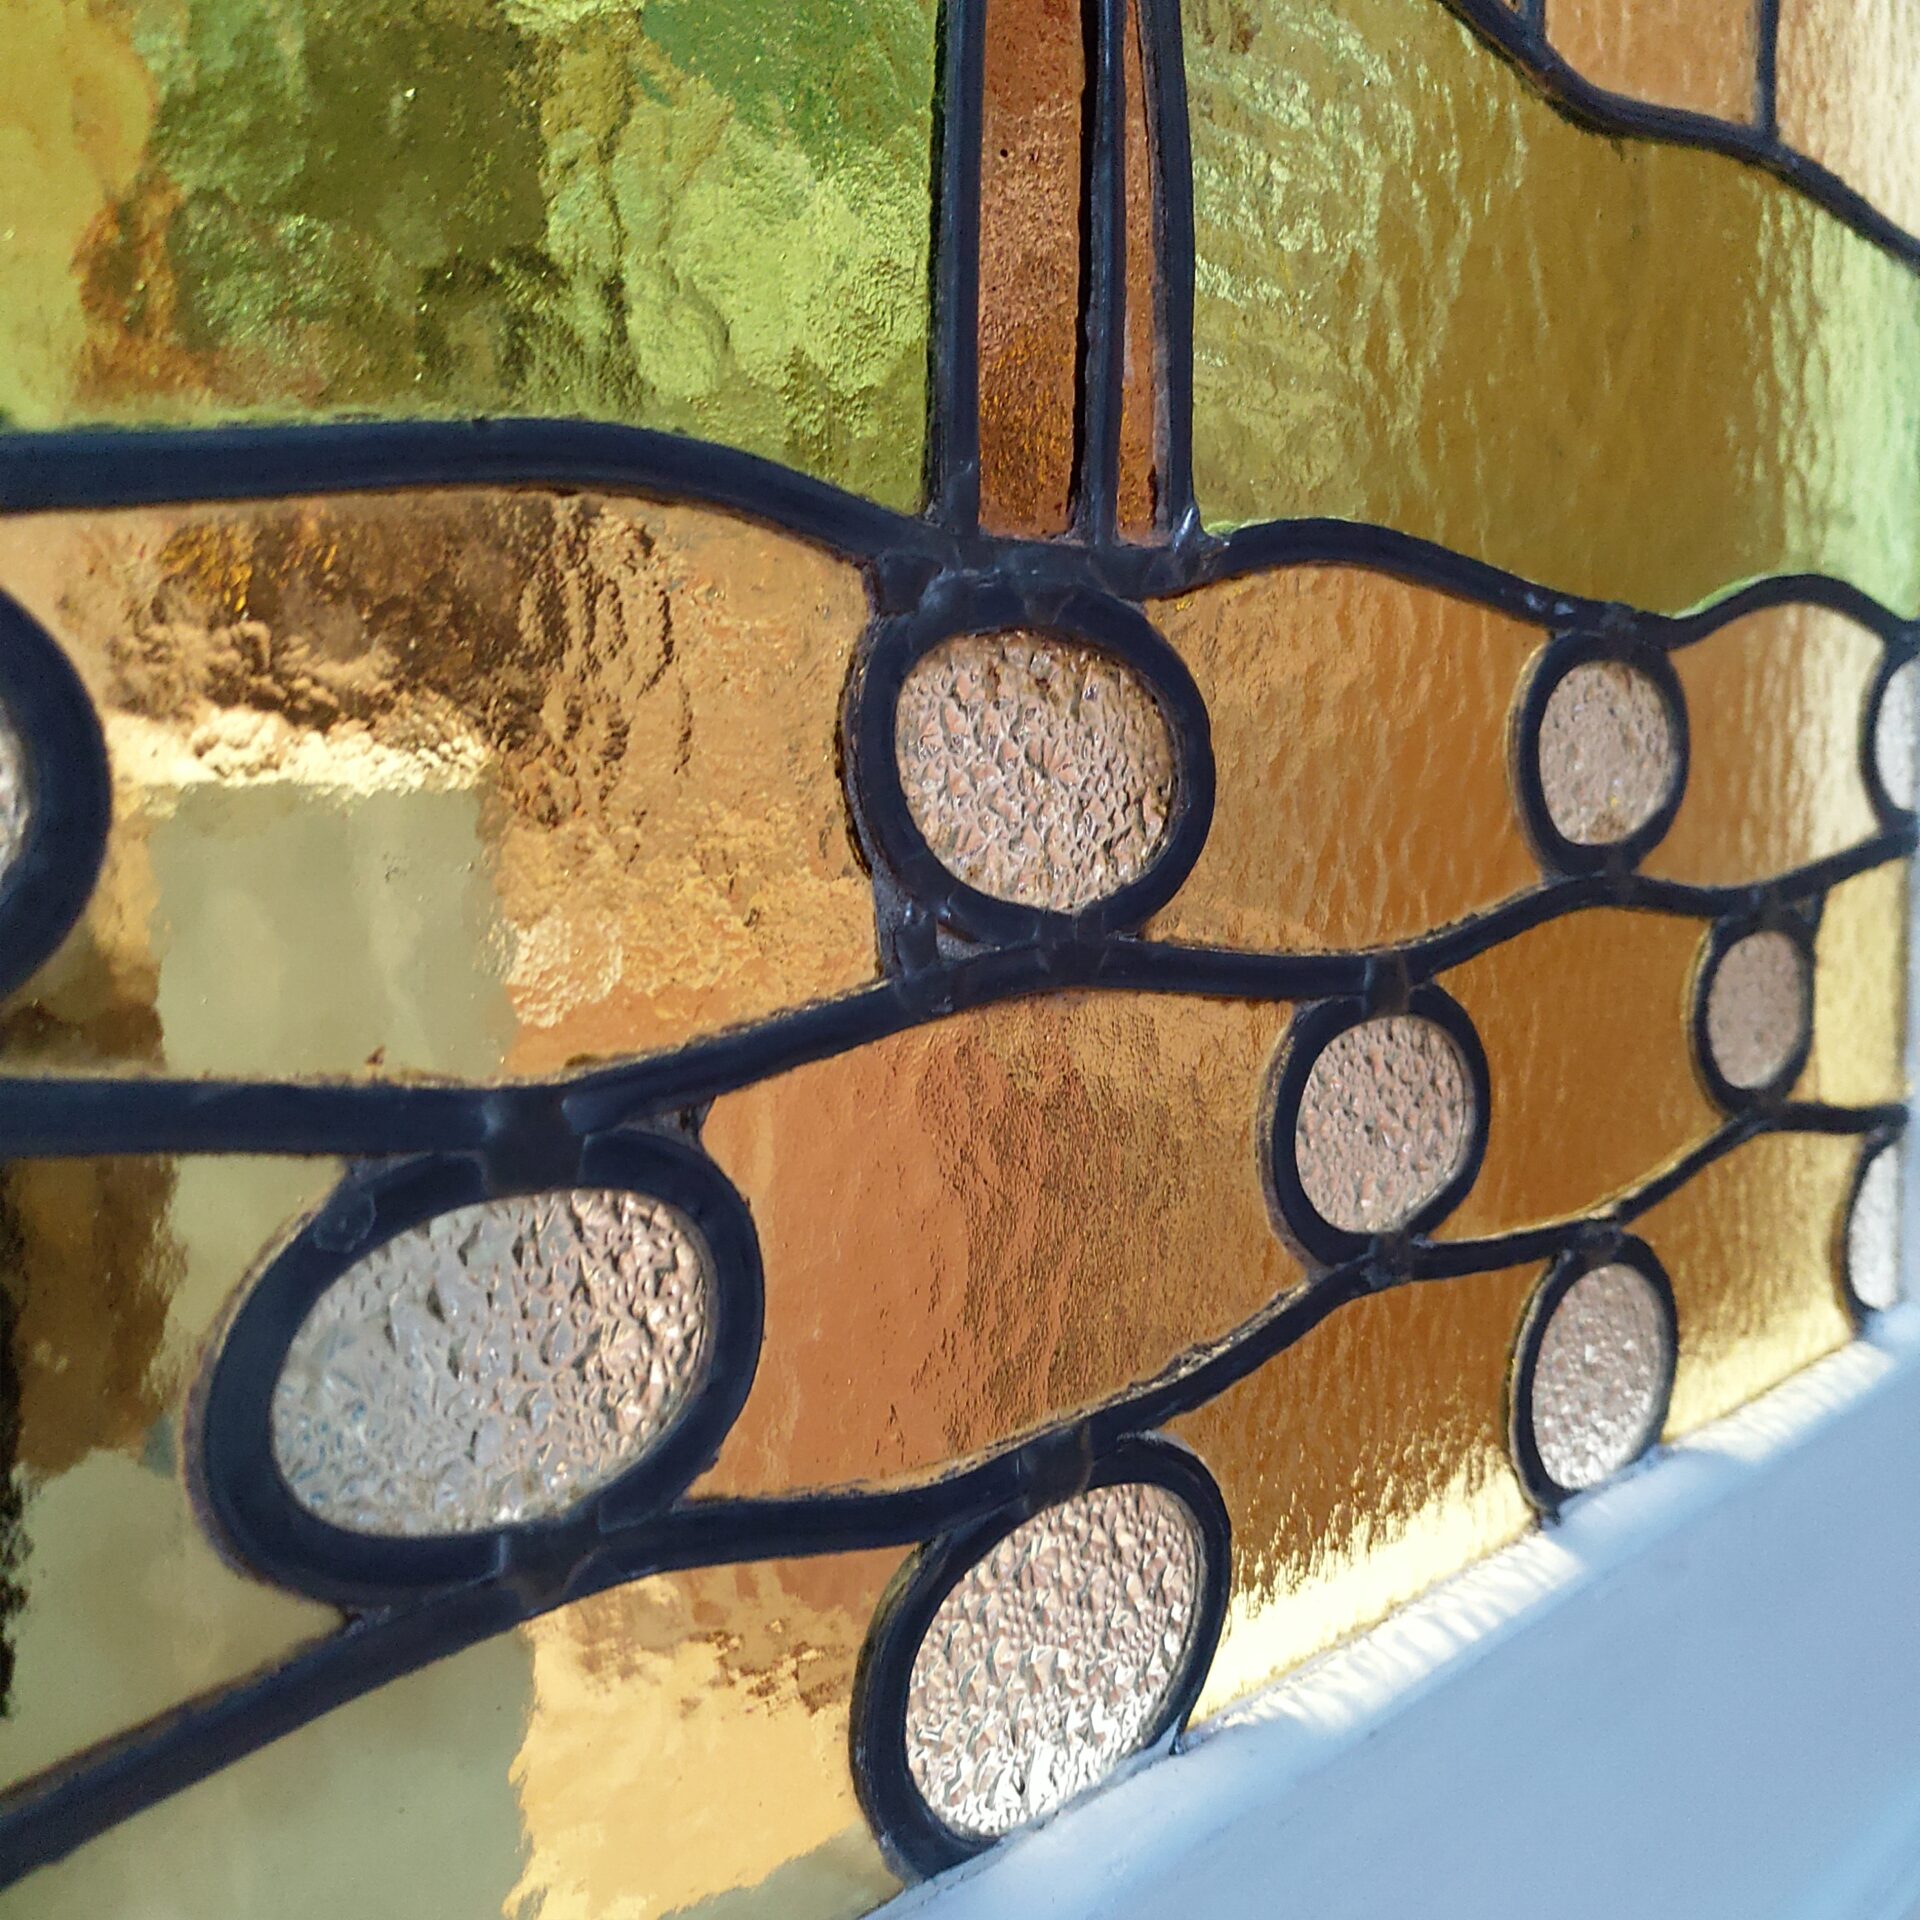 Atelier Illumen Herstelling van beschadigde glasramen reparatie réparation vitrail